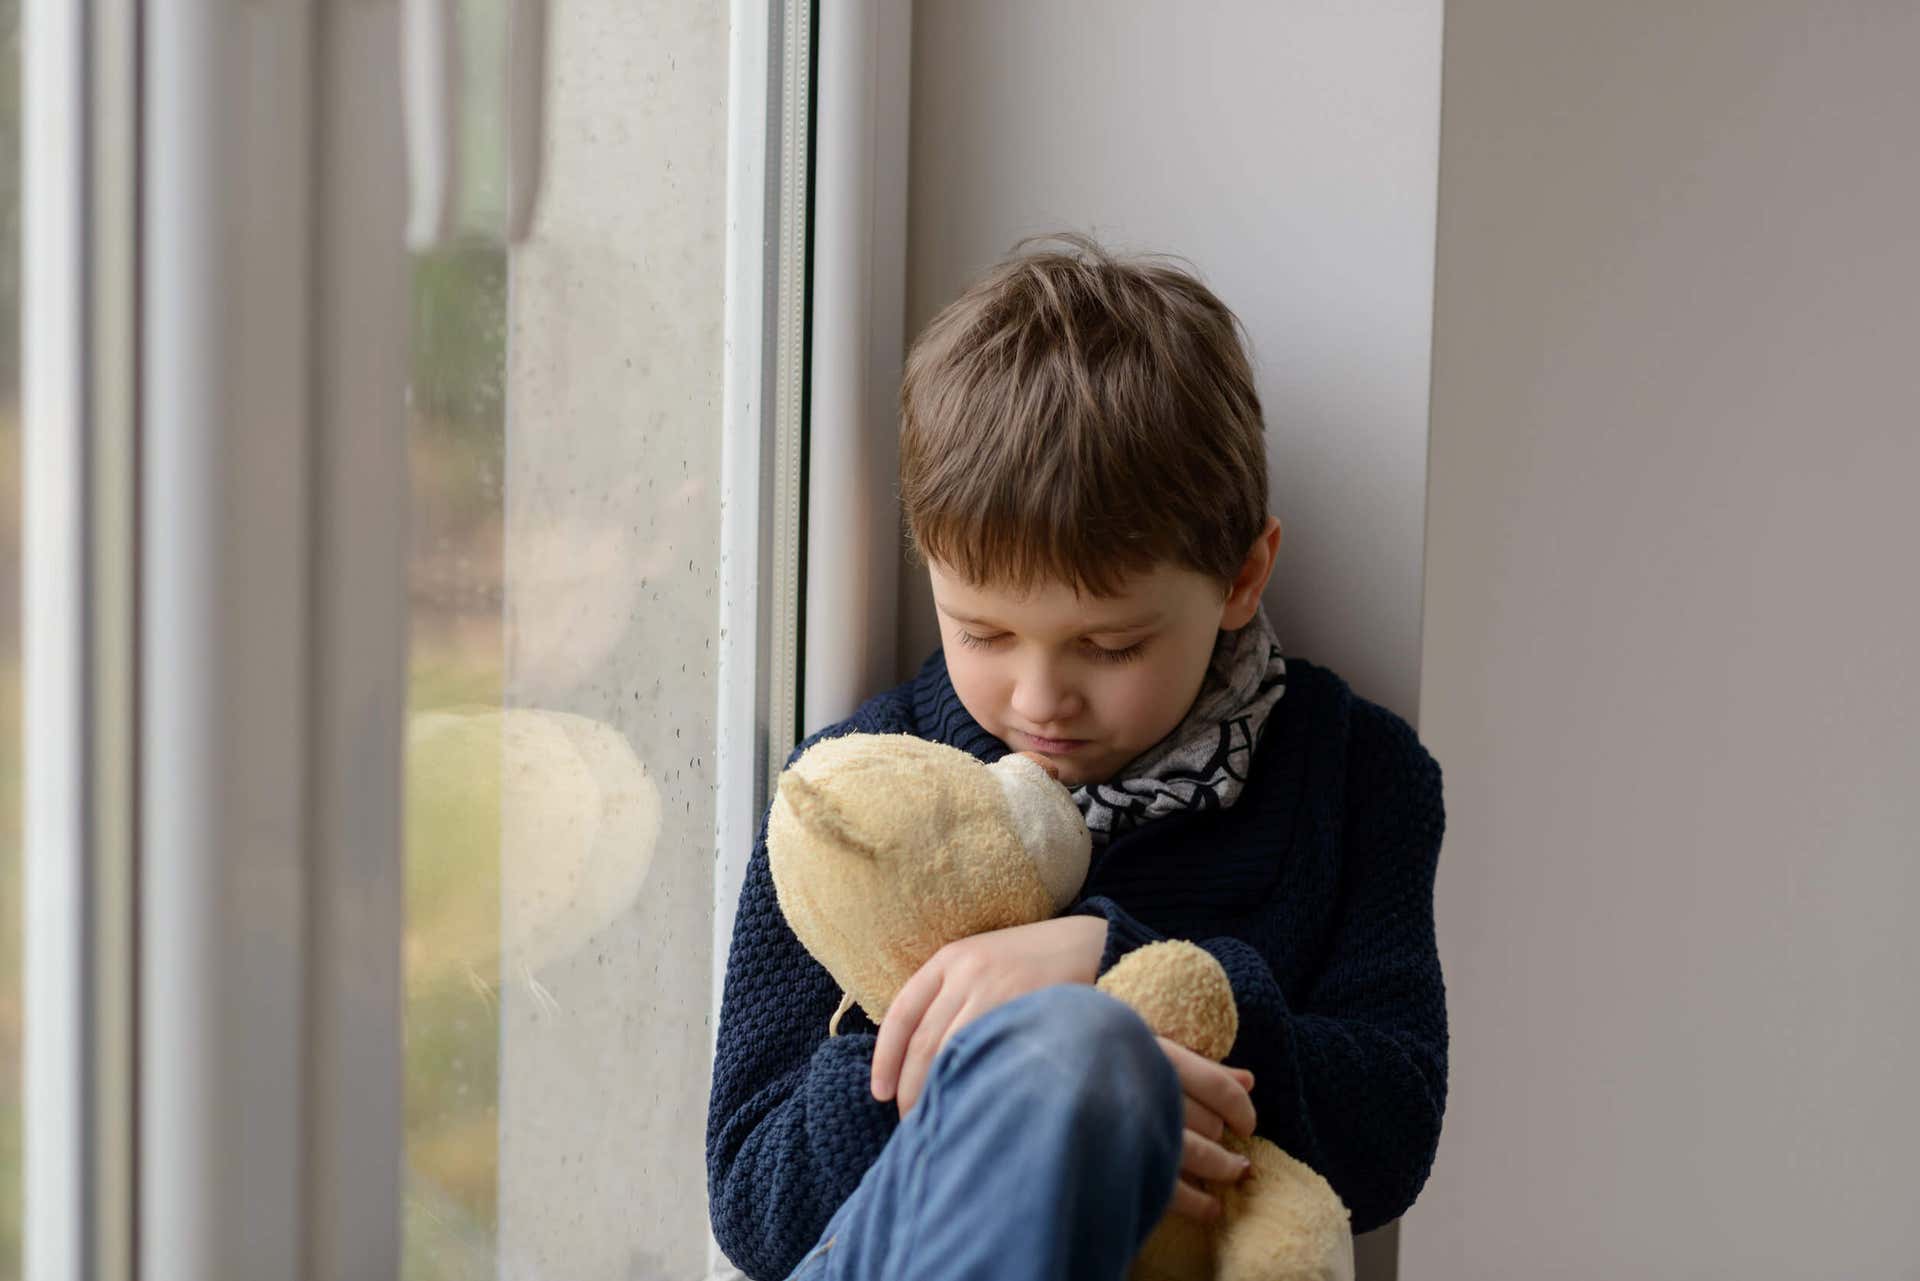 Criança com depressão se comporta mal.